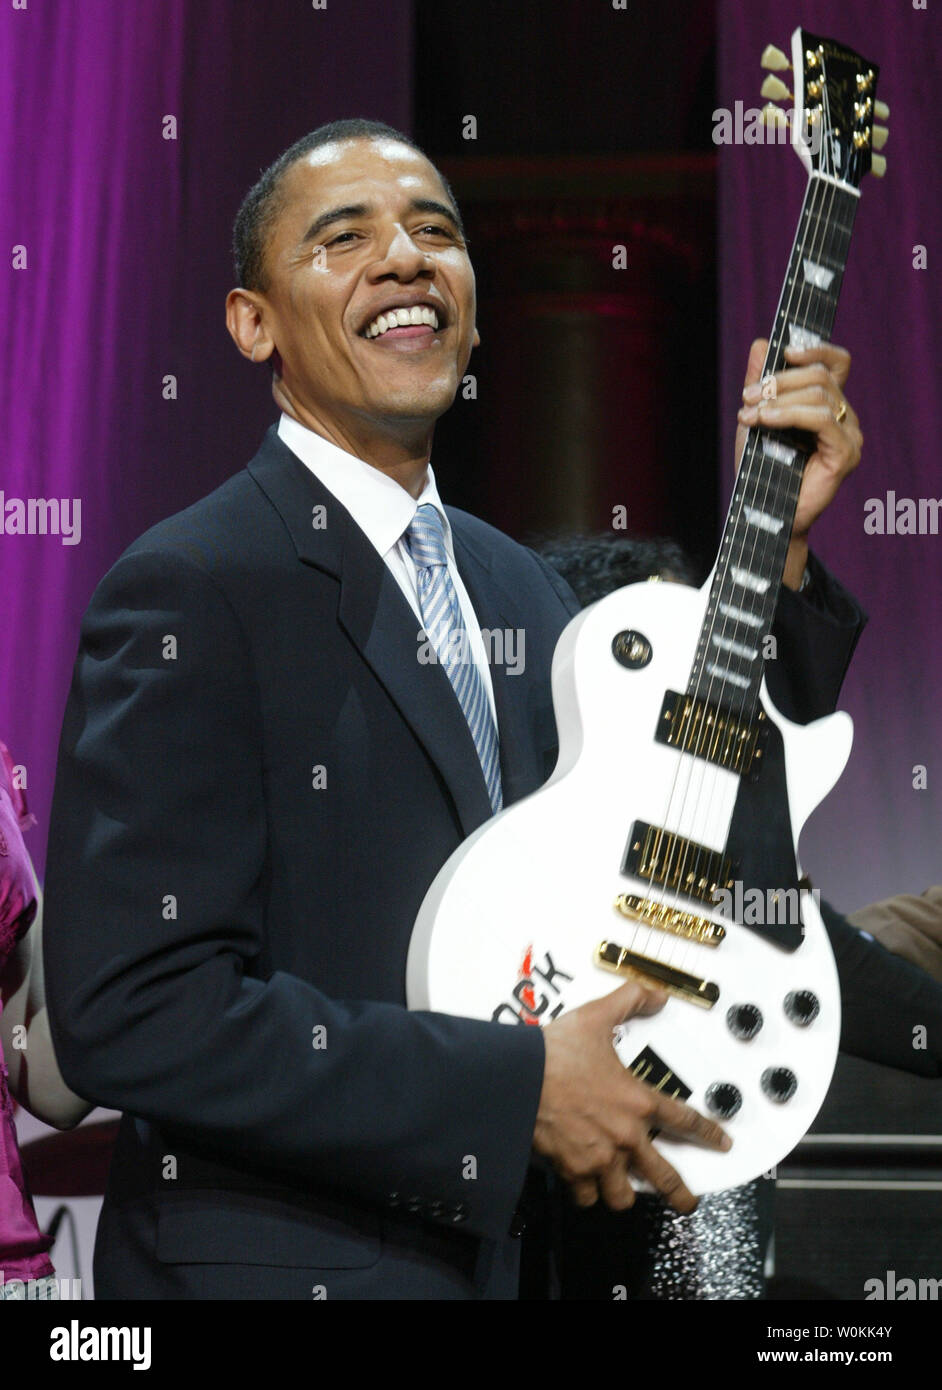 Le sénateur Barack Obama (D-IL) sourit avec une guitare Gibson, présenté à  lui pour gagner le prix de la Nation Rock Rock the Vote au cours de la  cérémonie de remise des